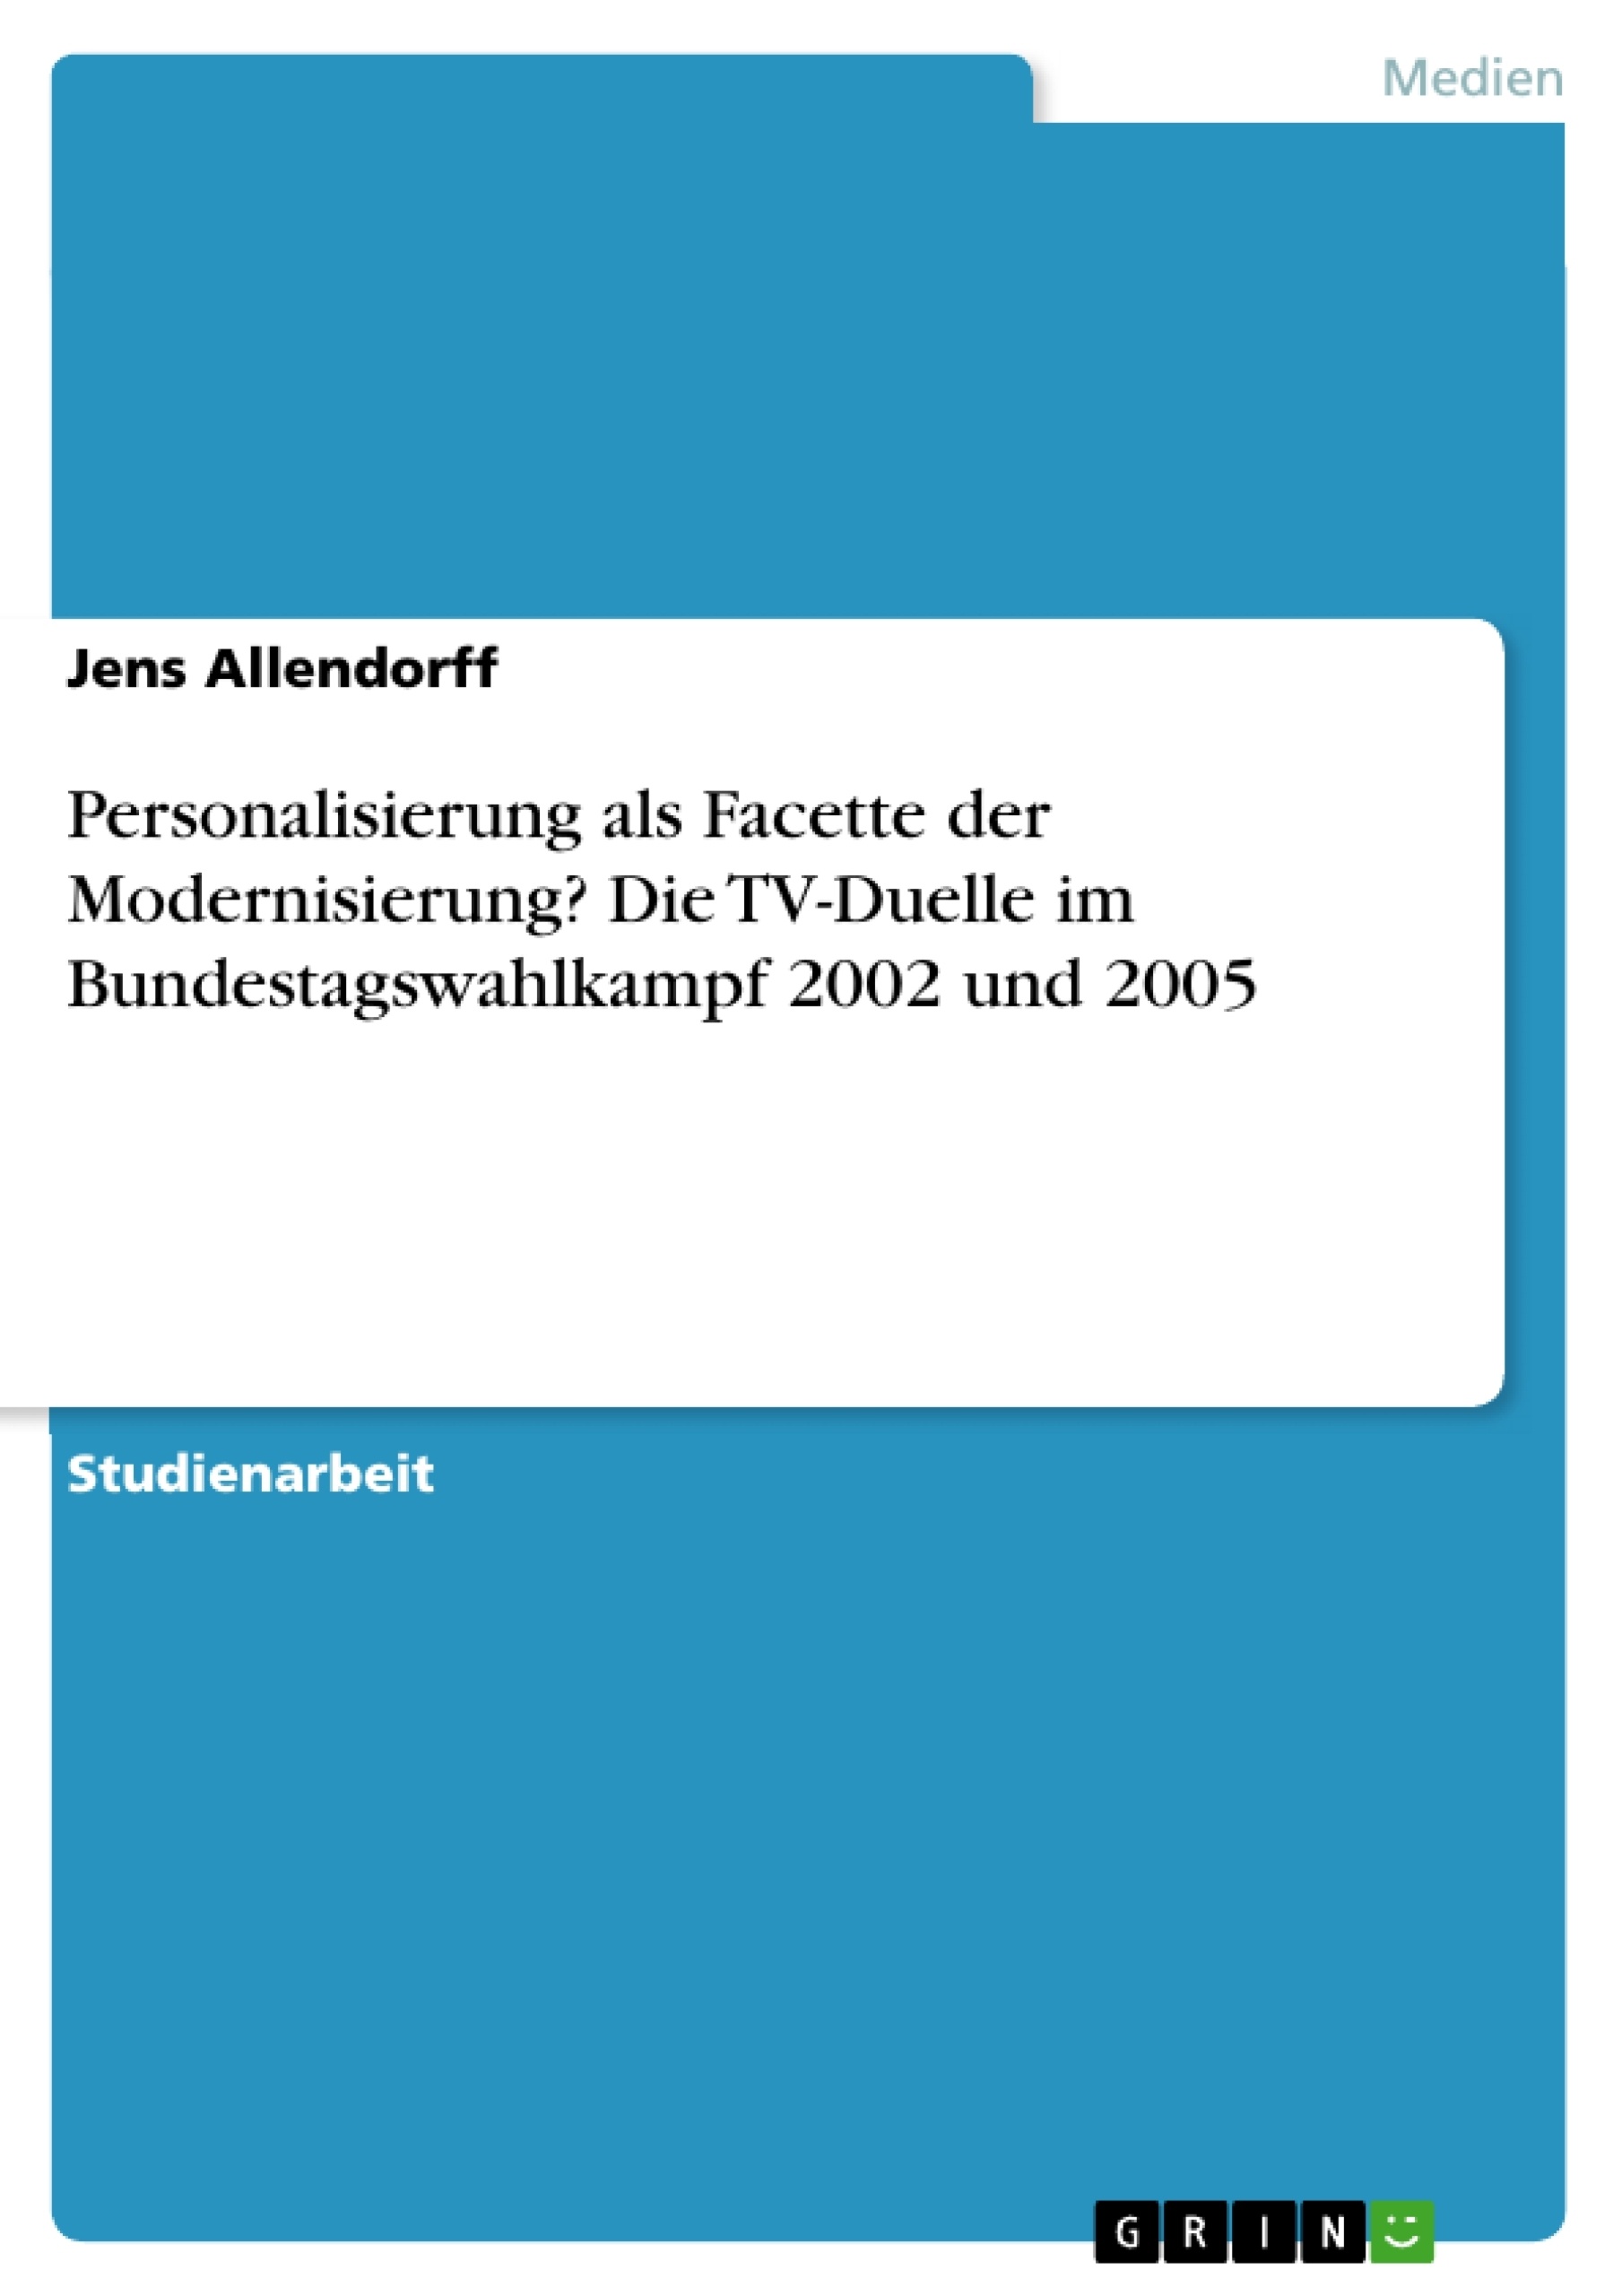 Título: Personalisierung als Facette der Modernisierung? Die TV-Duelle im Bundestagswahlkampf 2002 und 2005